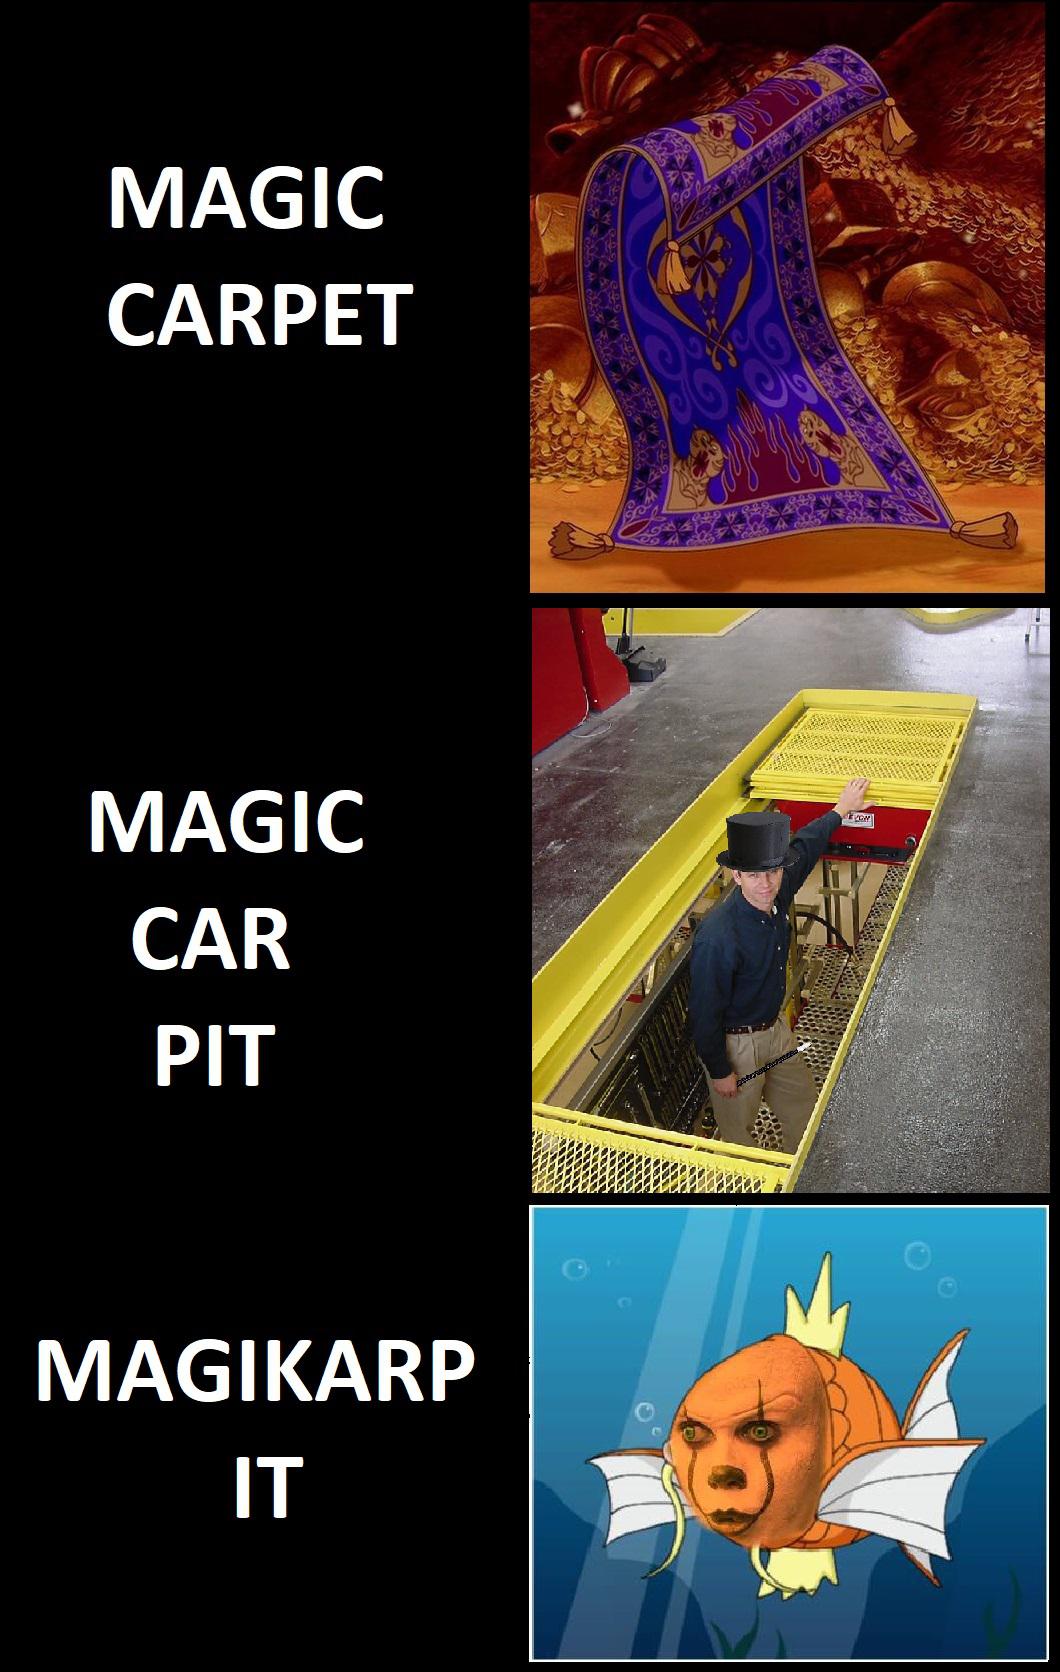 pokemon magikarp - Magic Carpet Em Magic Car Pit Magikarp